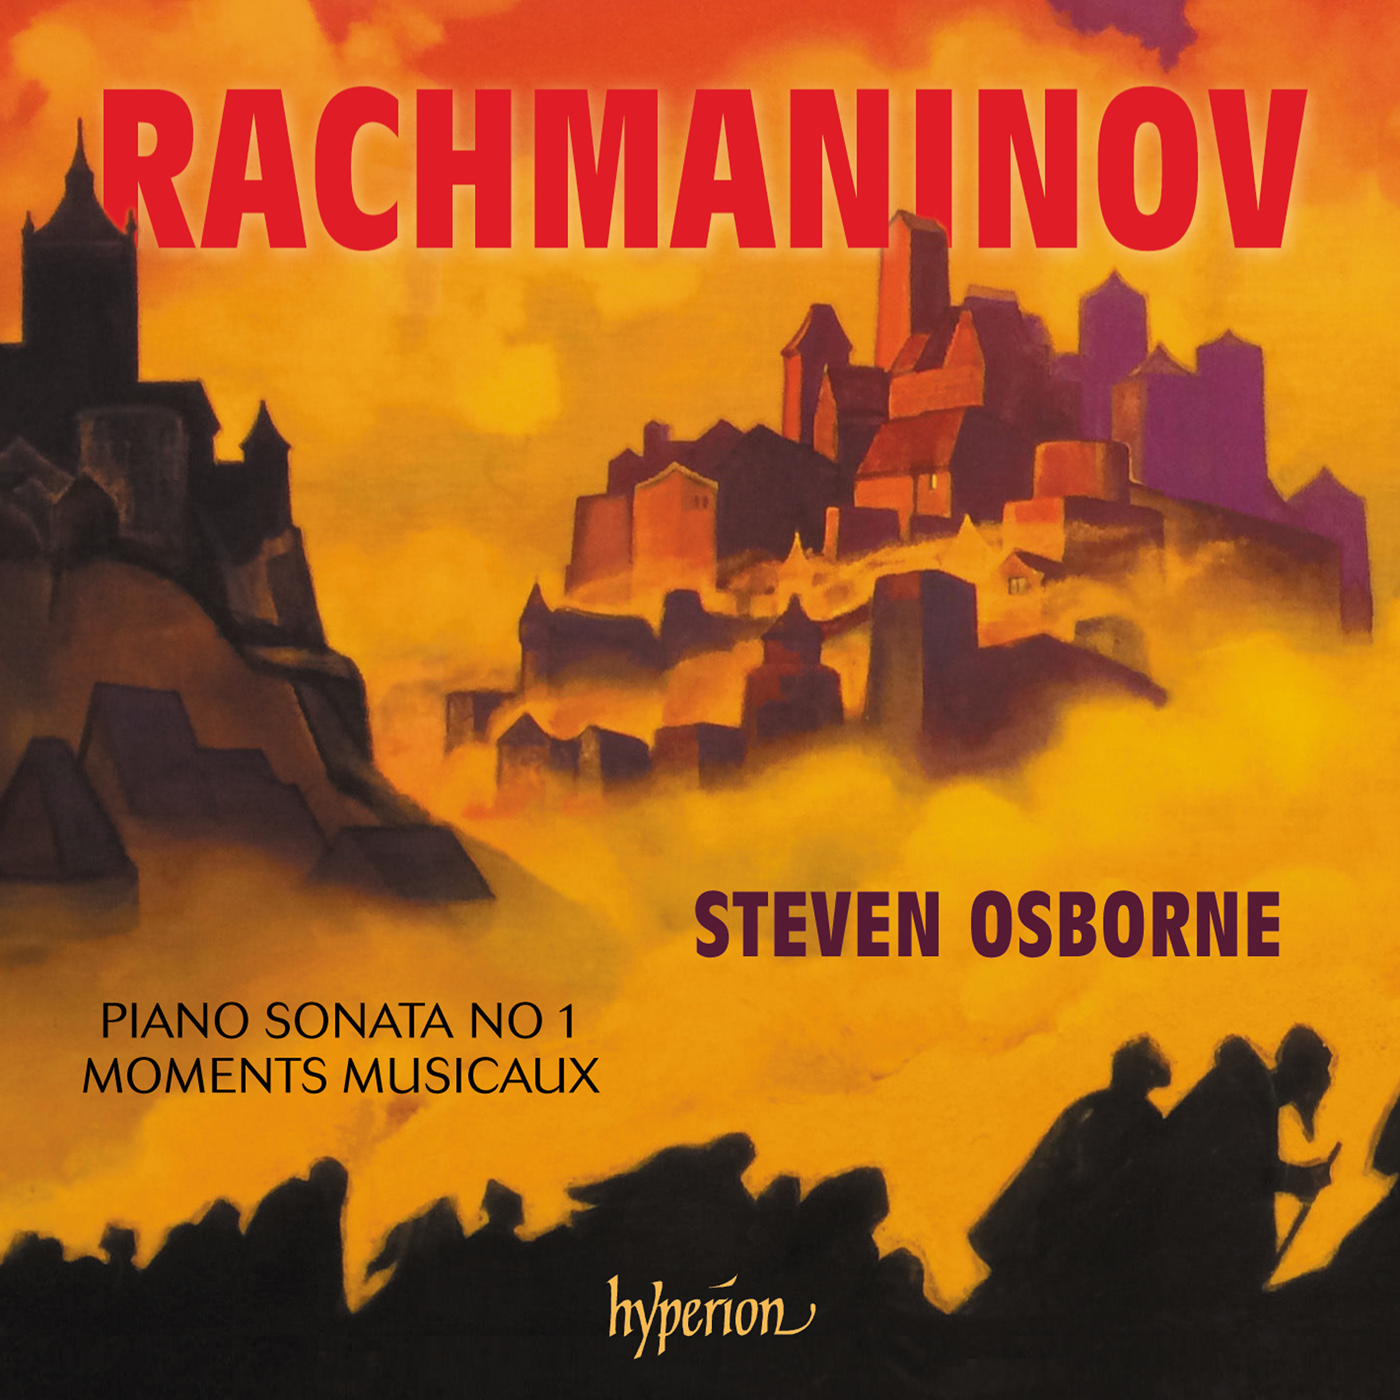 Rachmaninov: Piano Sonata No 1 & Moments musicaux